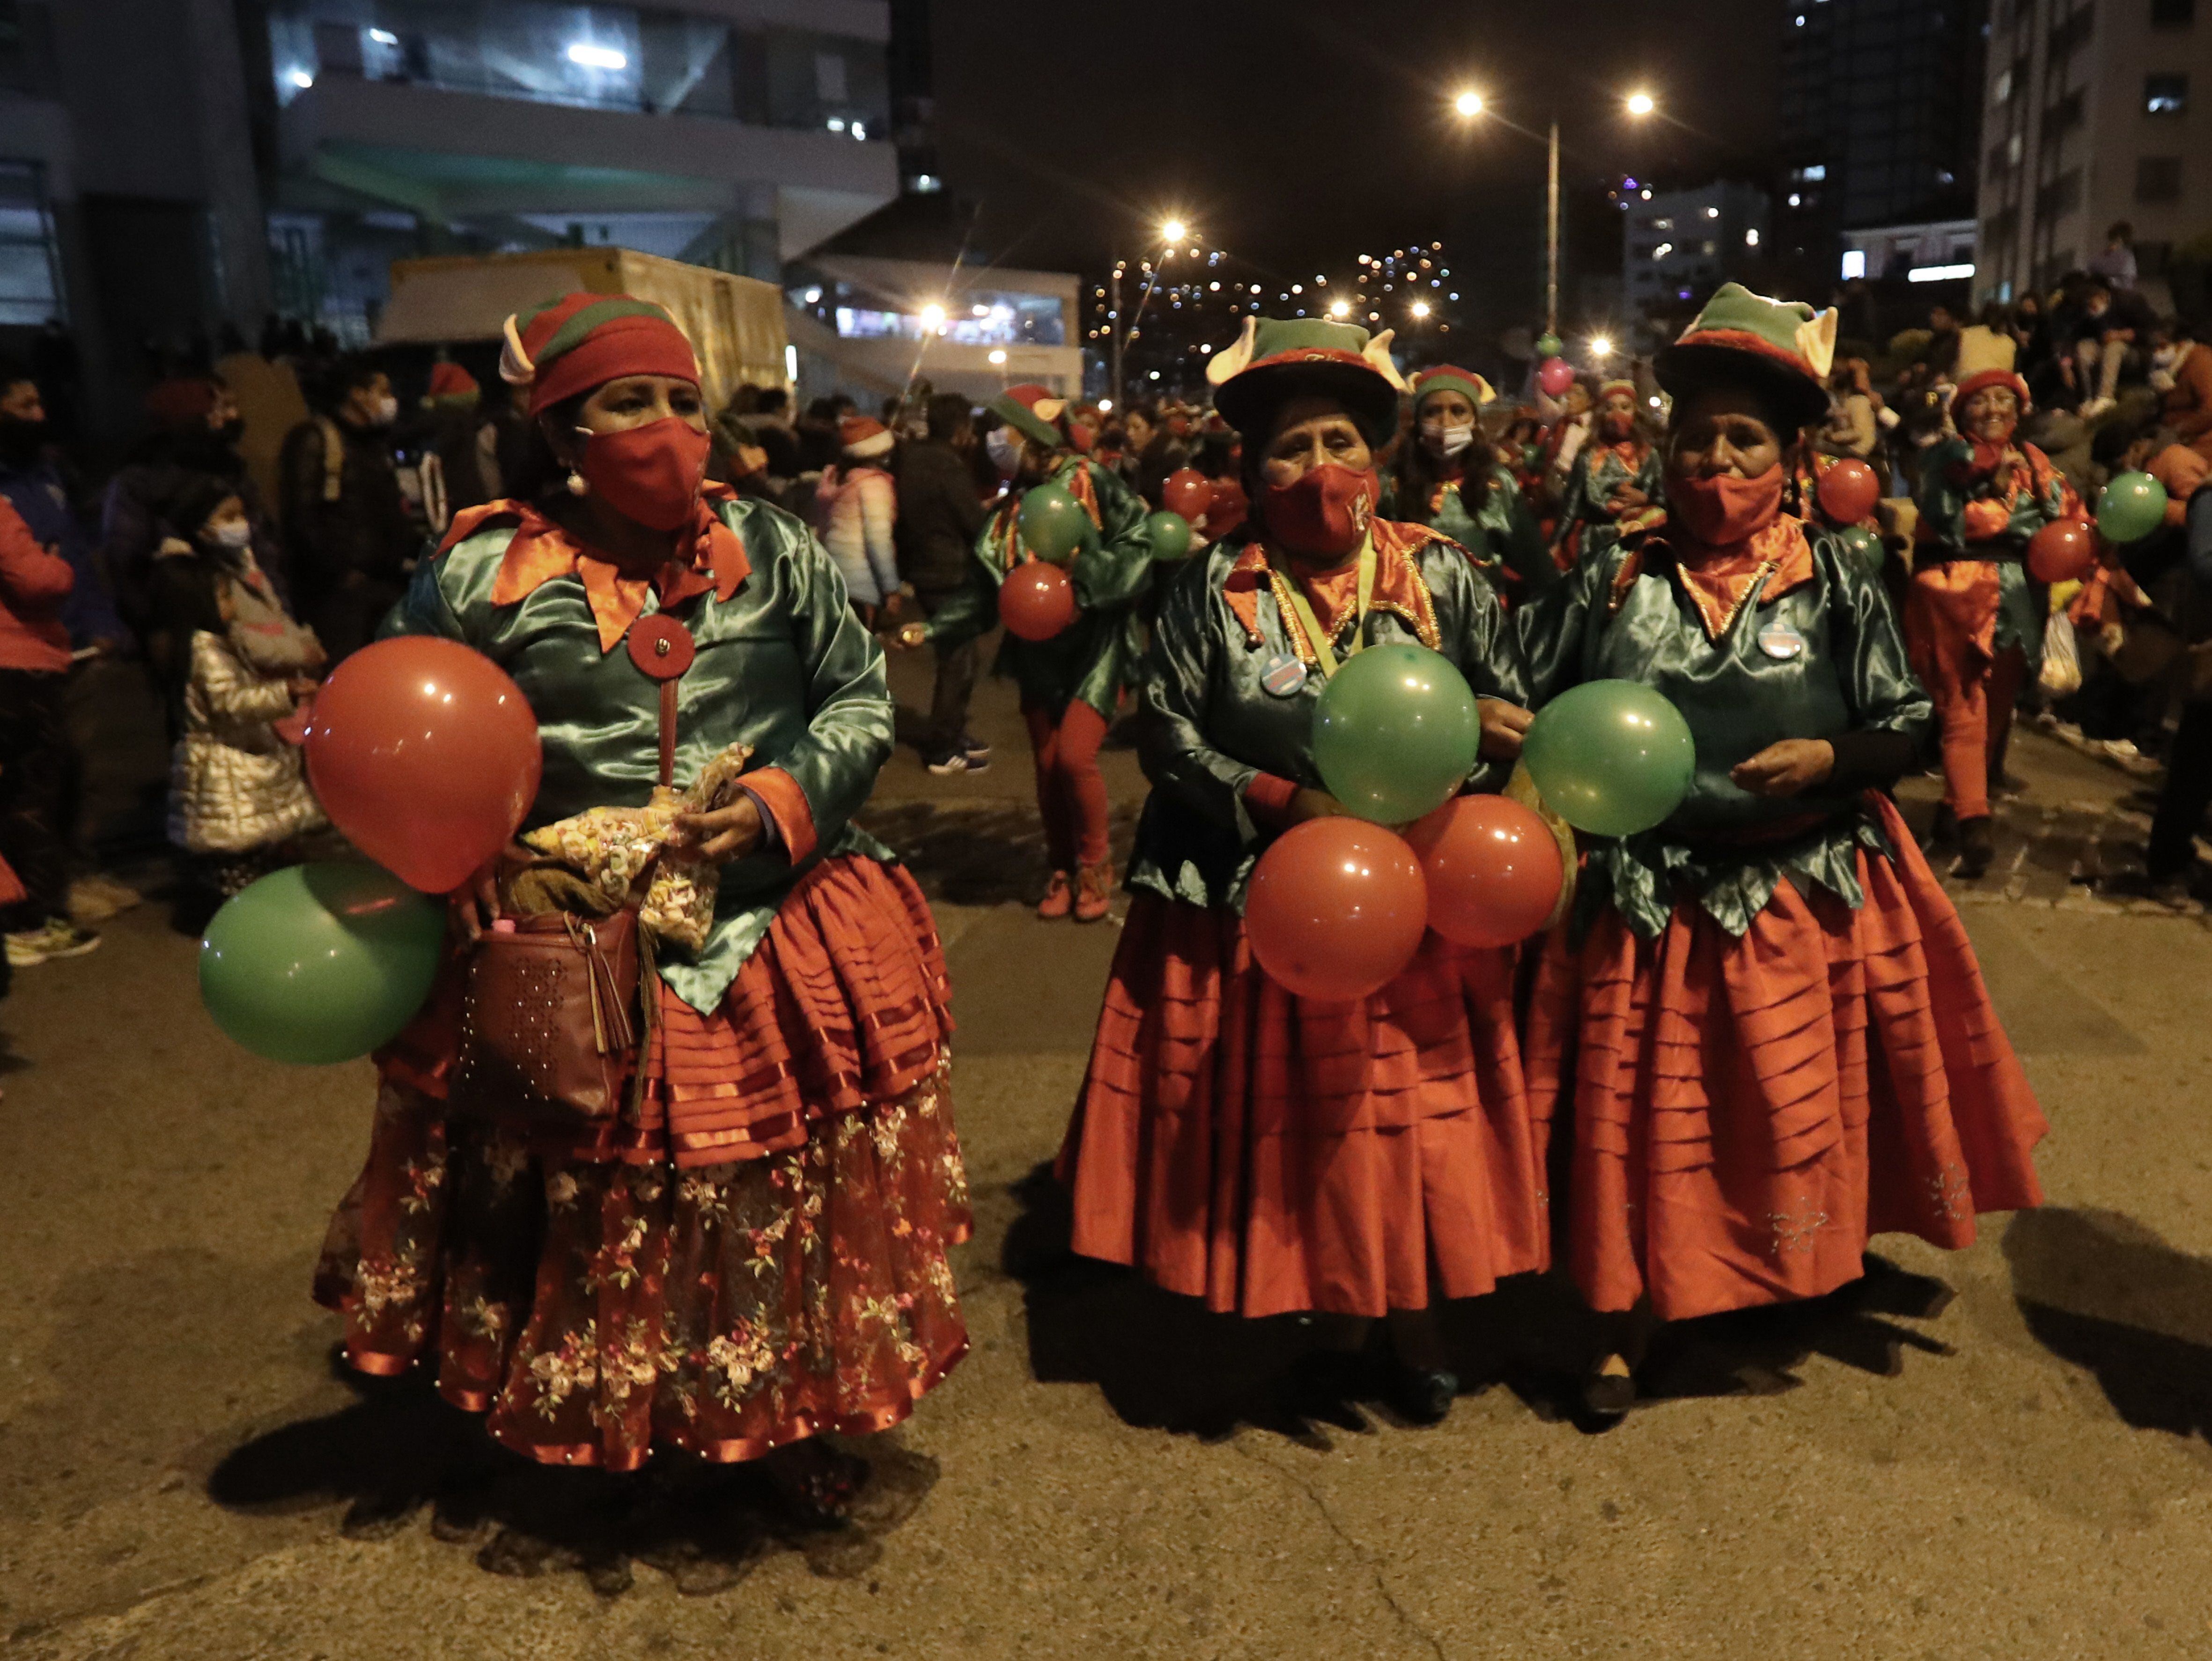 Mujeres artesanas aimaras vestidas de duendes fueron registradas este viernes, durante la "Caravana Navideña Paz y Unidad", protagonizada por los artesanos y comerciantes que todos los años instalan en estas épocas una feria de Navidad en el Parque Urbano Central (PUC), en La Paz (Bolivia). EFE/Martín Alipaz